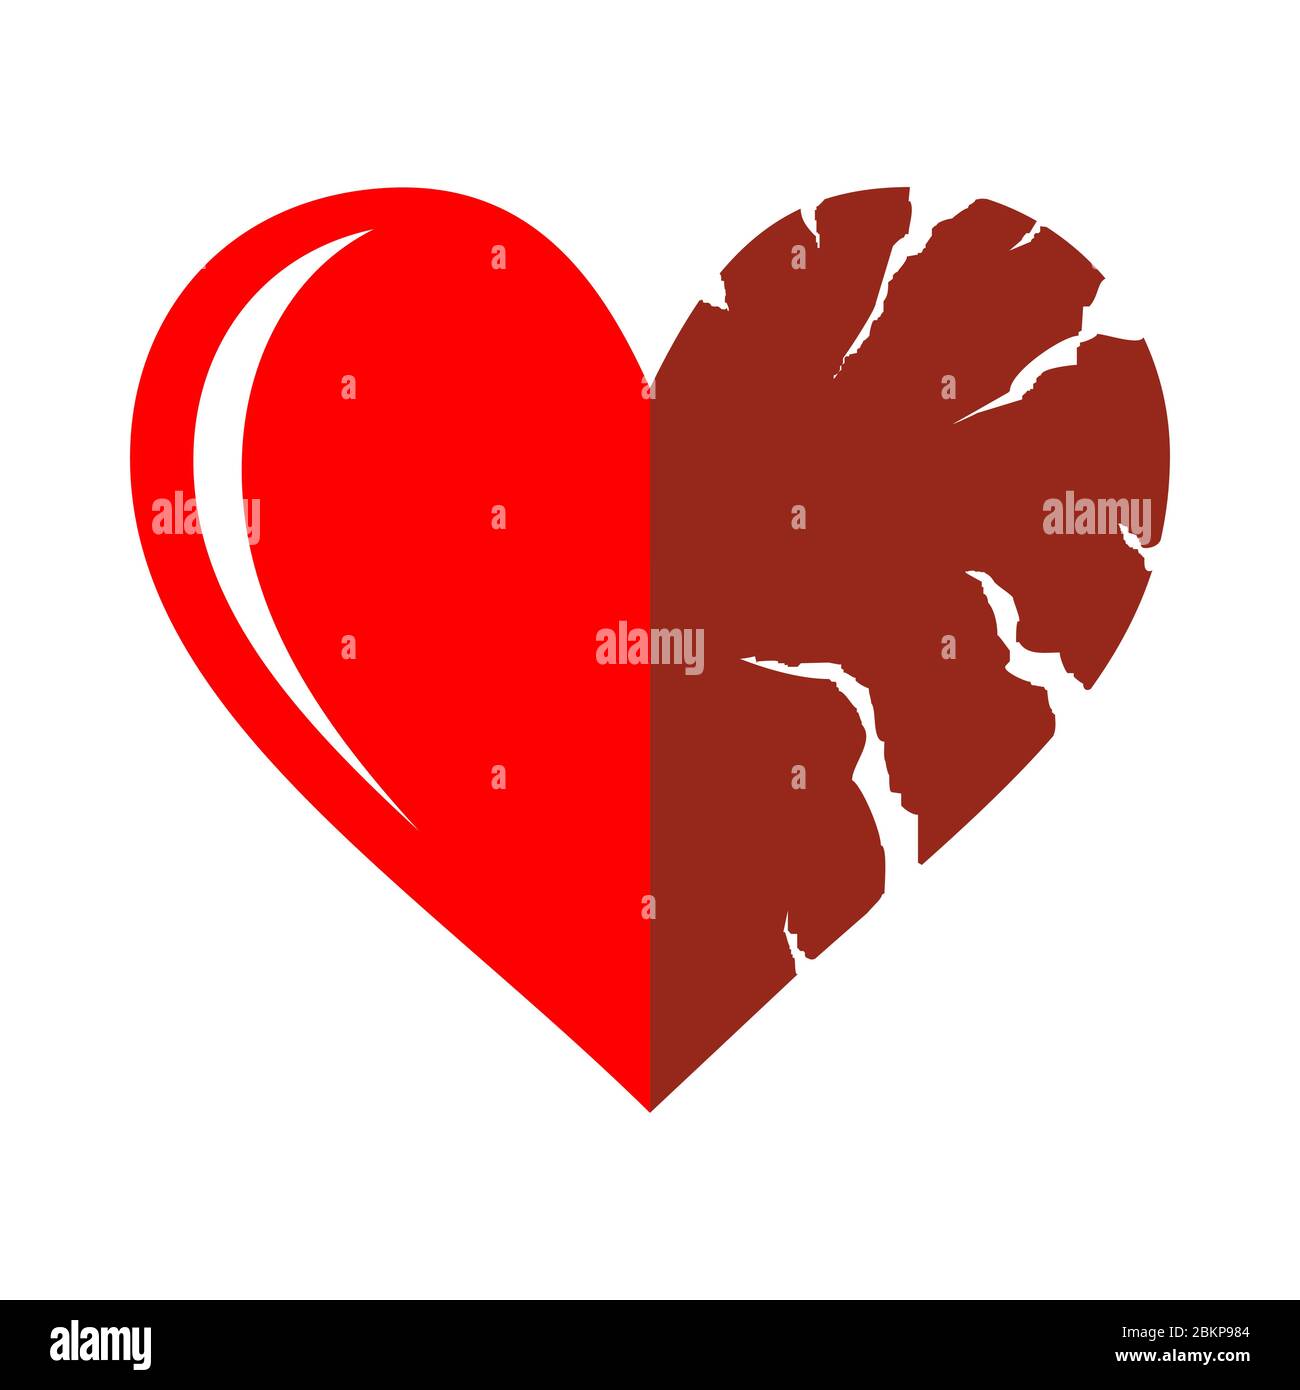 Zwei Hälften des roten gebrochenen Herzens Symbol isoliert auf weißem Hintergrund. Herzform mit Rissen und zerklüfteten Rändern. Symbol unglücklicher Liebe, emotionaler Erfahrung Stock Vektor